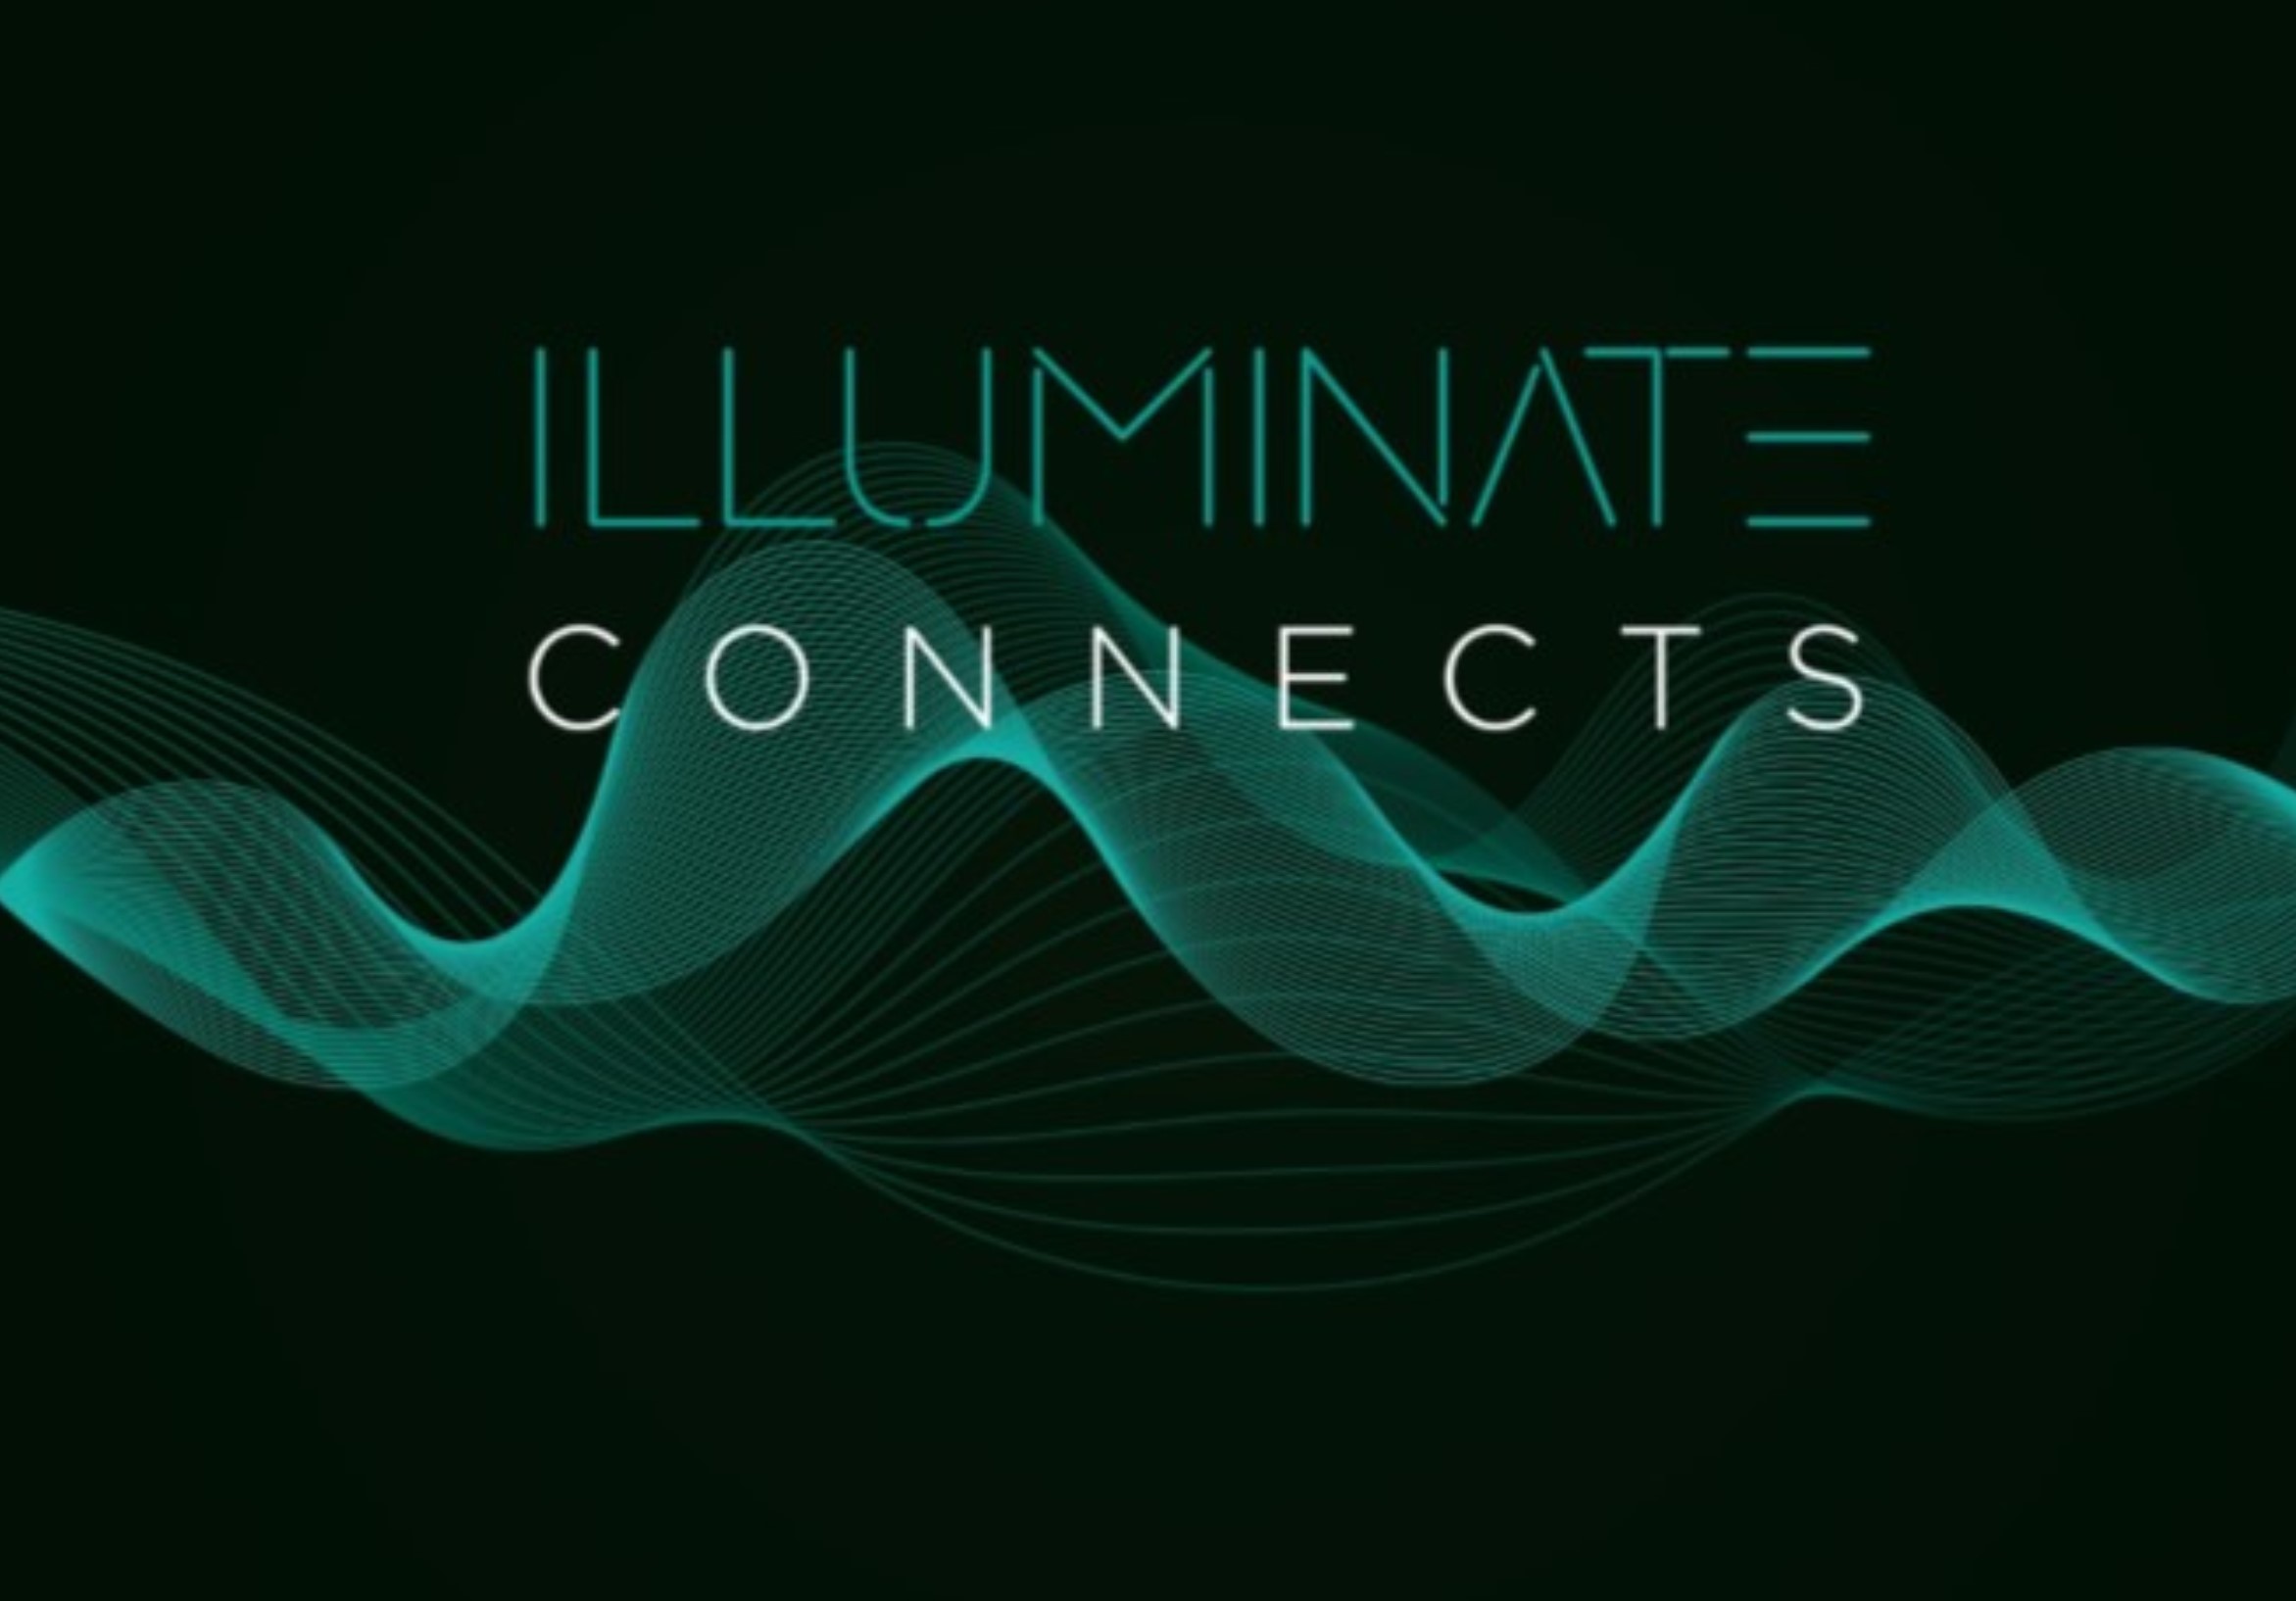 Illuminate connects image